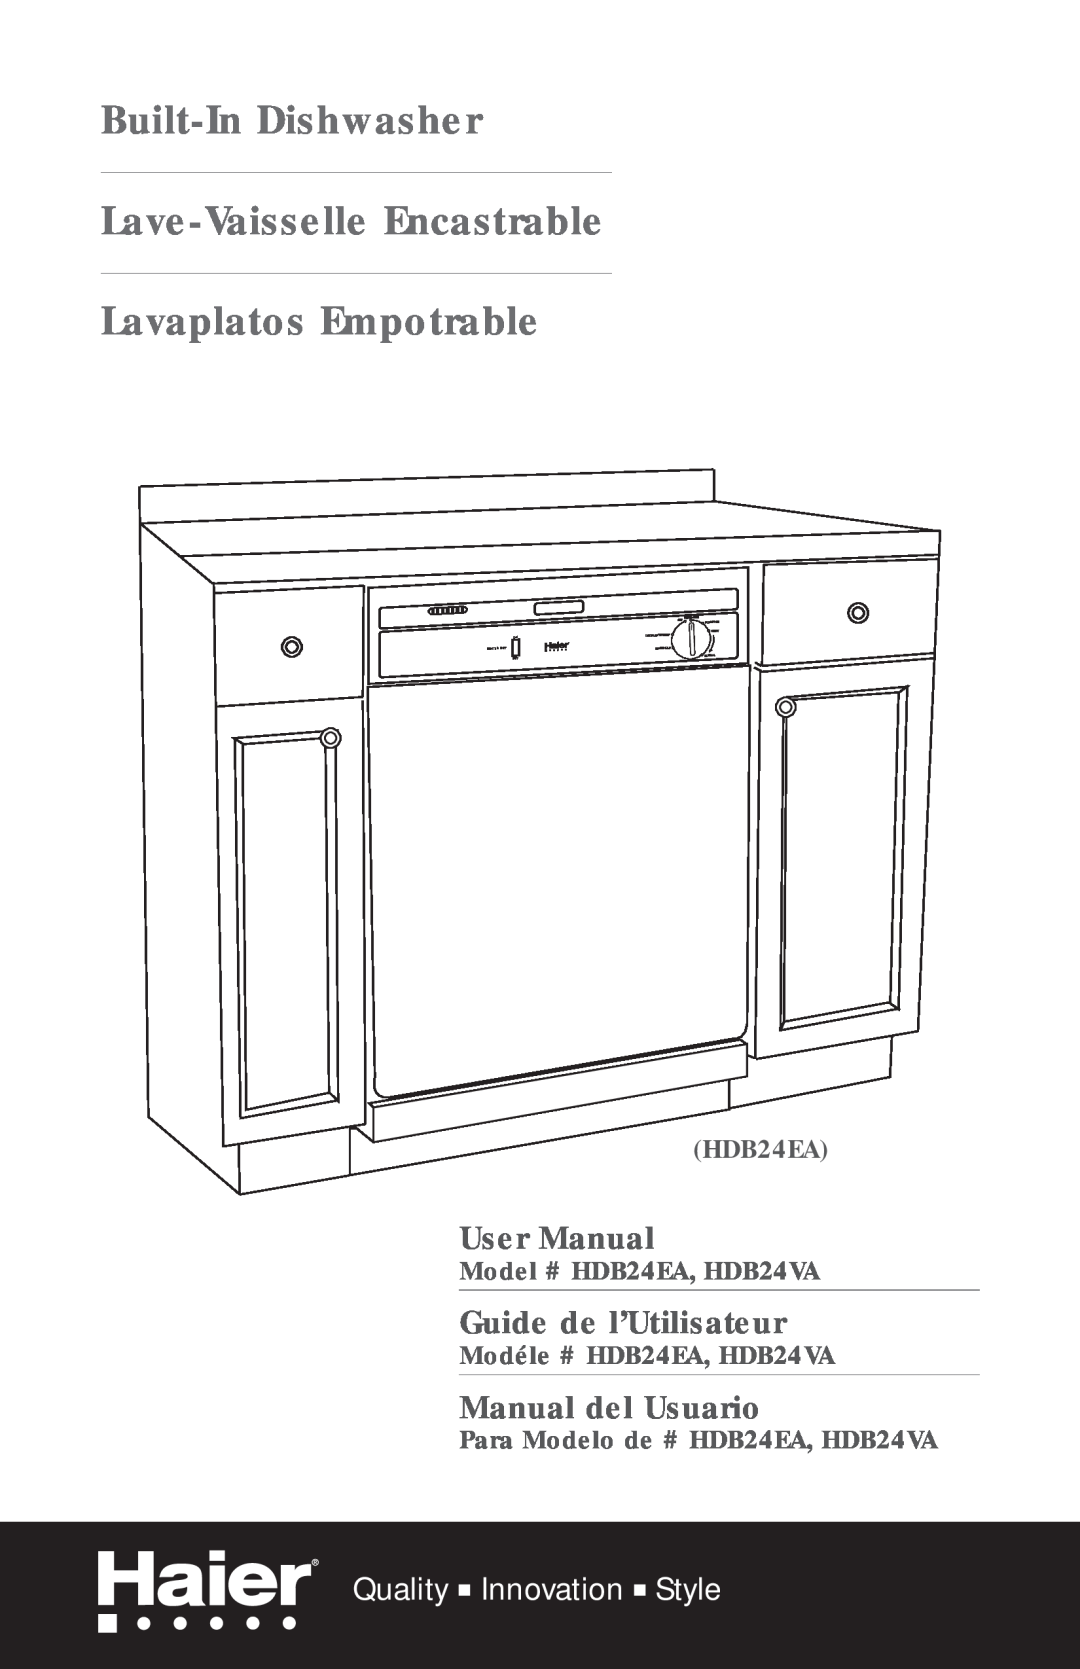 Haier HDB24VA user manual Built-In Dishwasher Lave-Vaisselle Encastrable Lavaplatos Empotrable, Guide de l’Utilisateur 